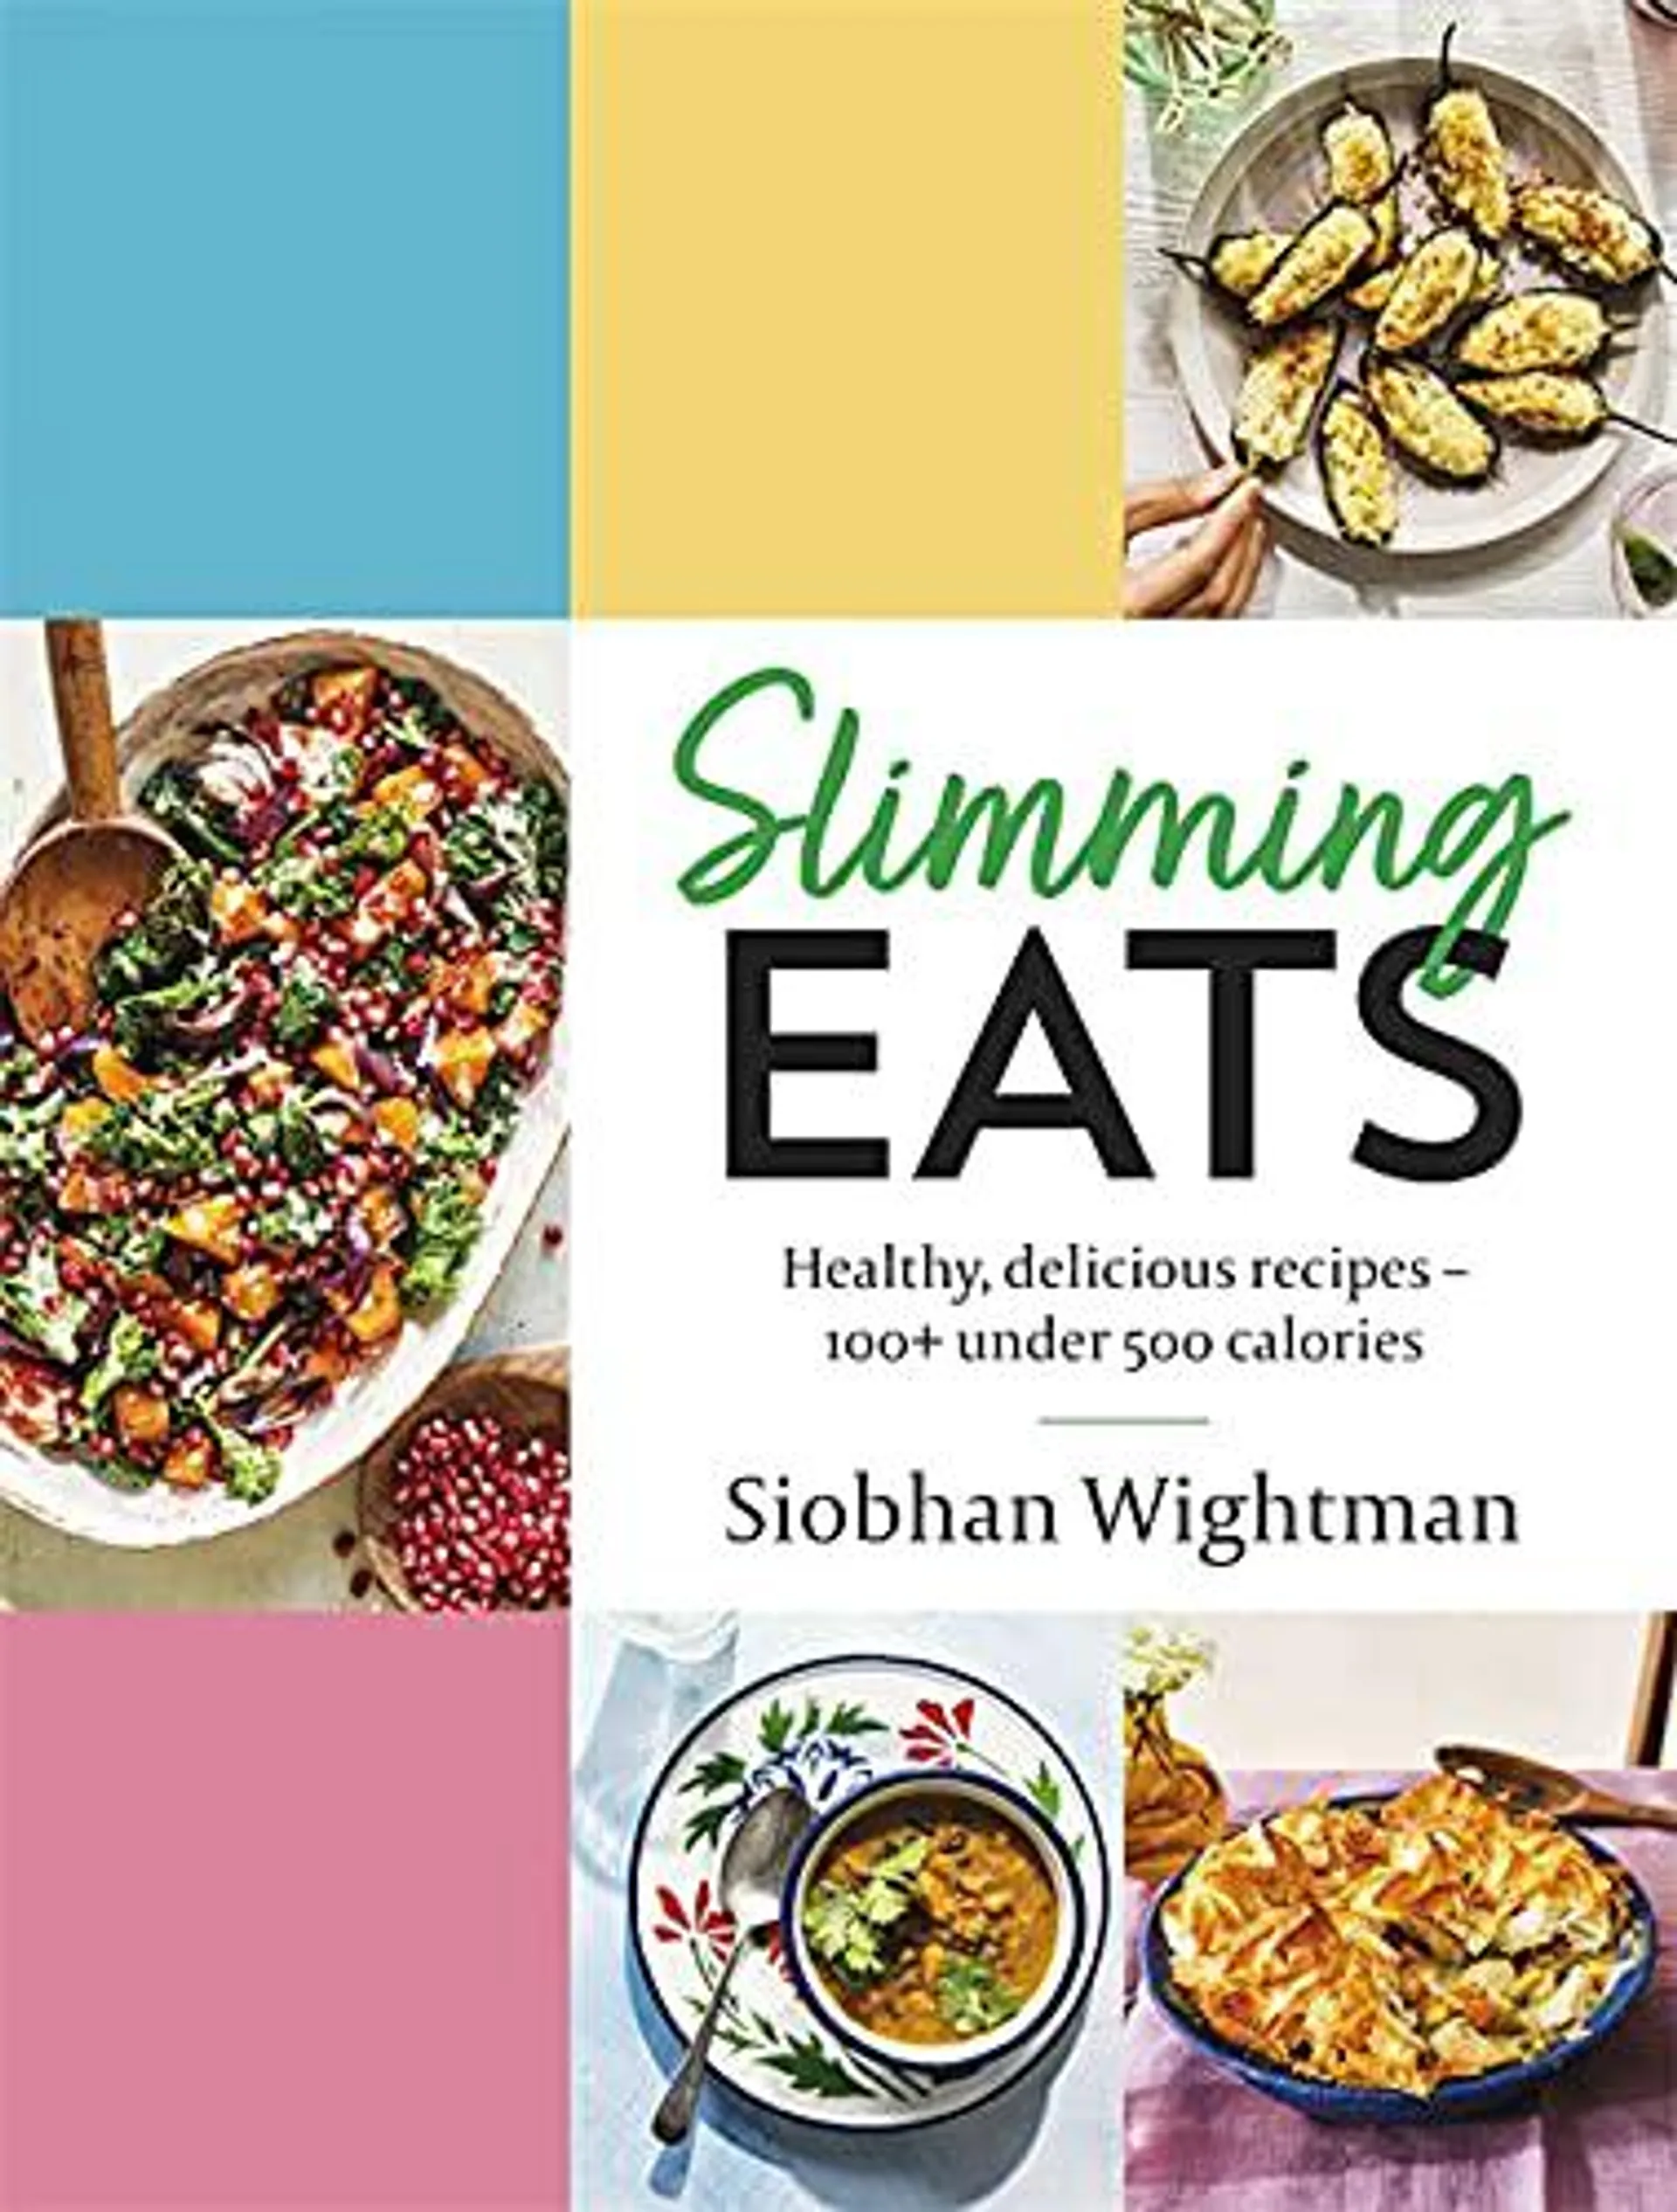 Slimming Eats by Siobhan Wightman